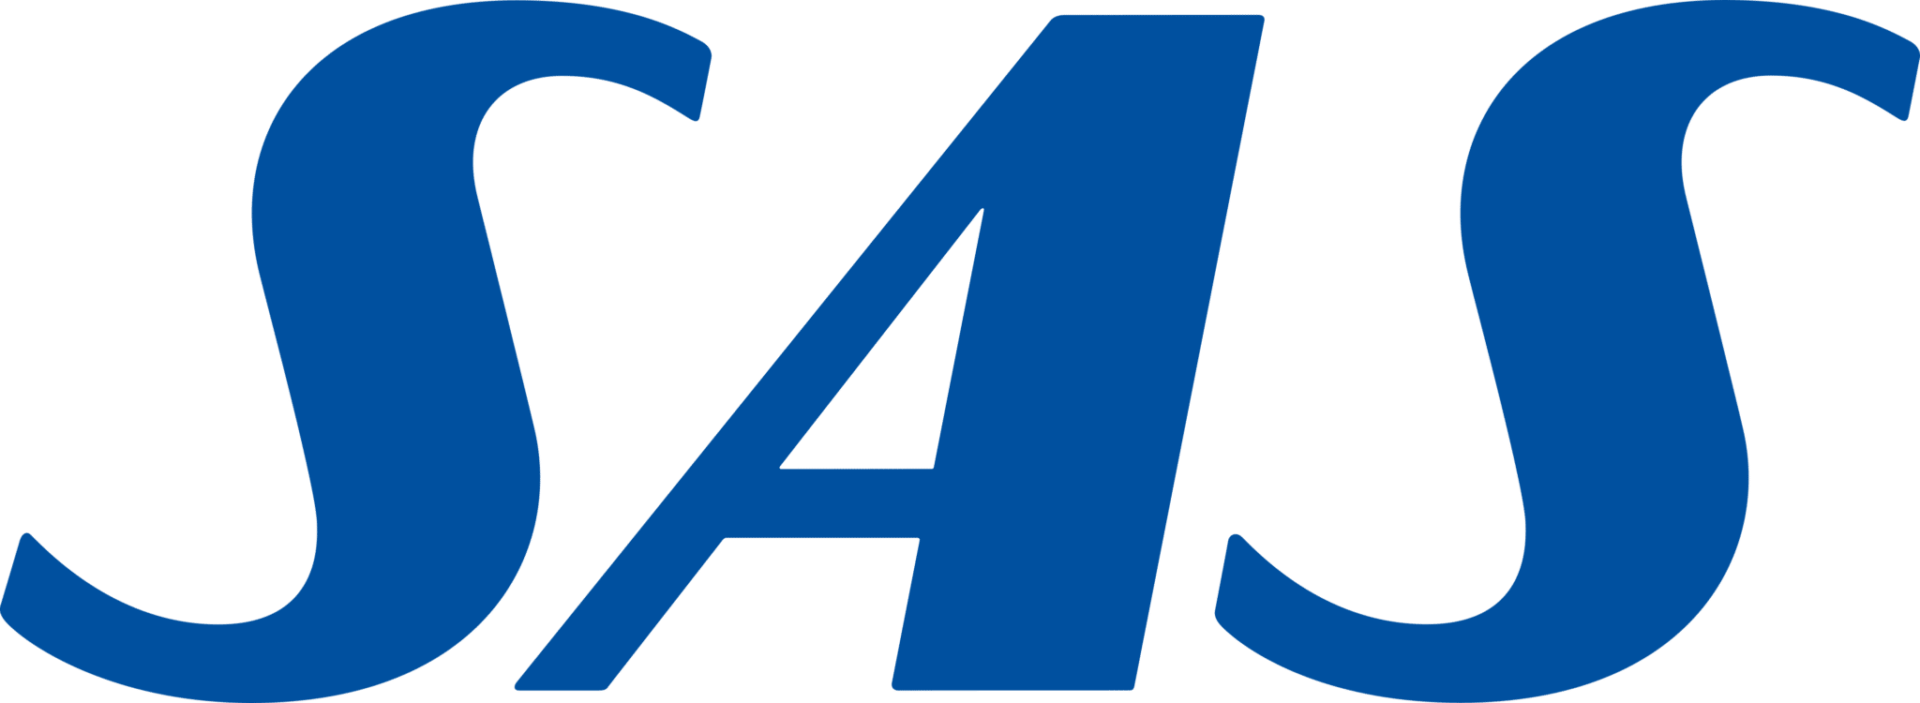 Sas Logo 1